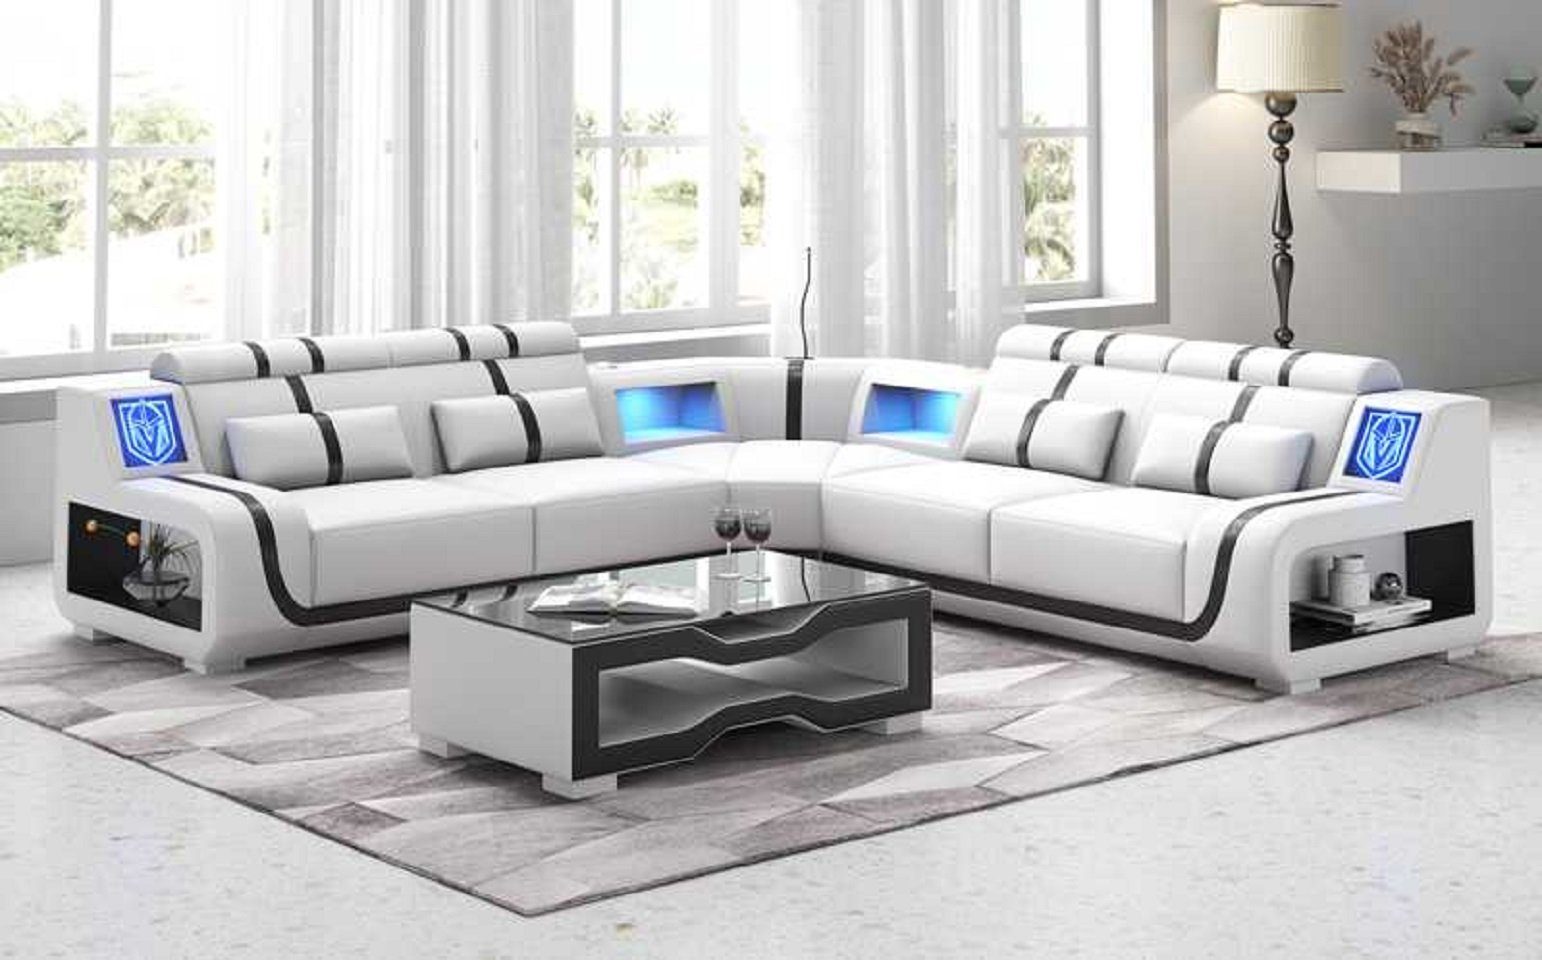 JVmoebel Ecksofa Luxus Couch Ecksofa L Form Modern Kunstleder couchen Sofa Sofas, 3 Teile, Made in Europe Weiß